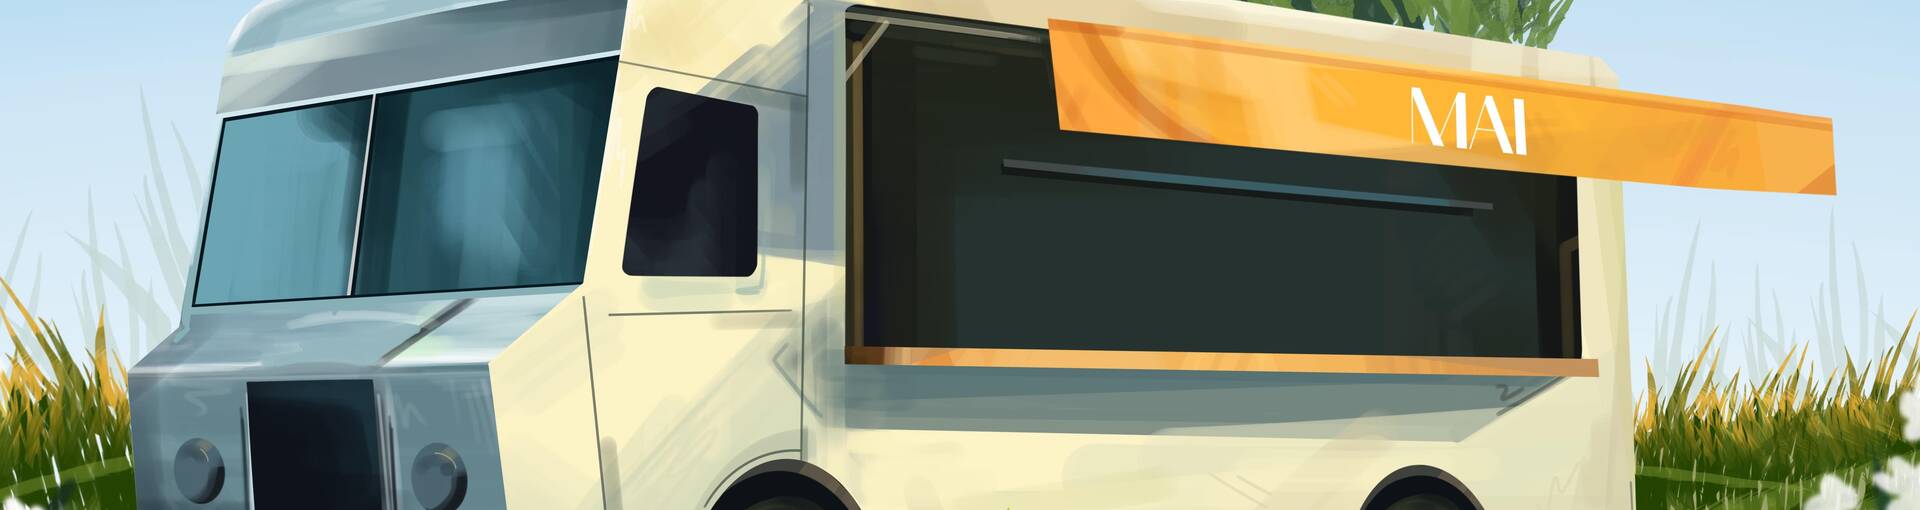 Illustration food truck et muguets